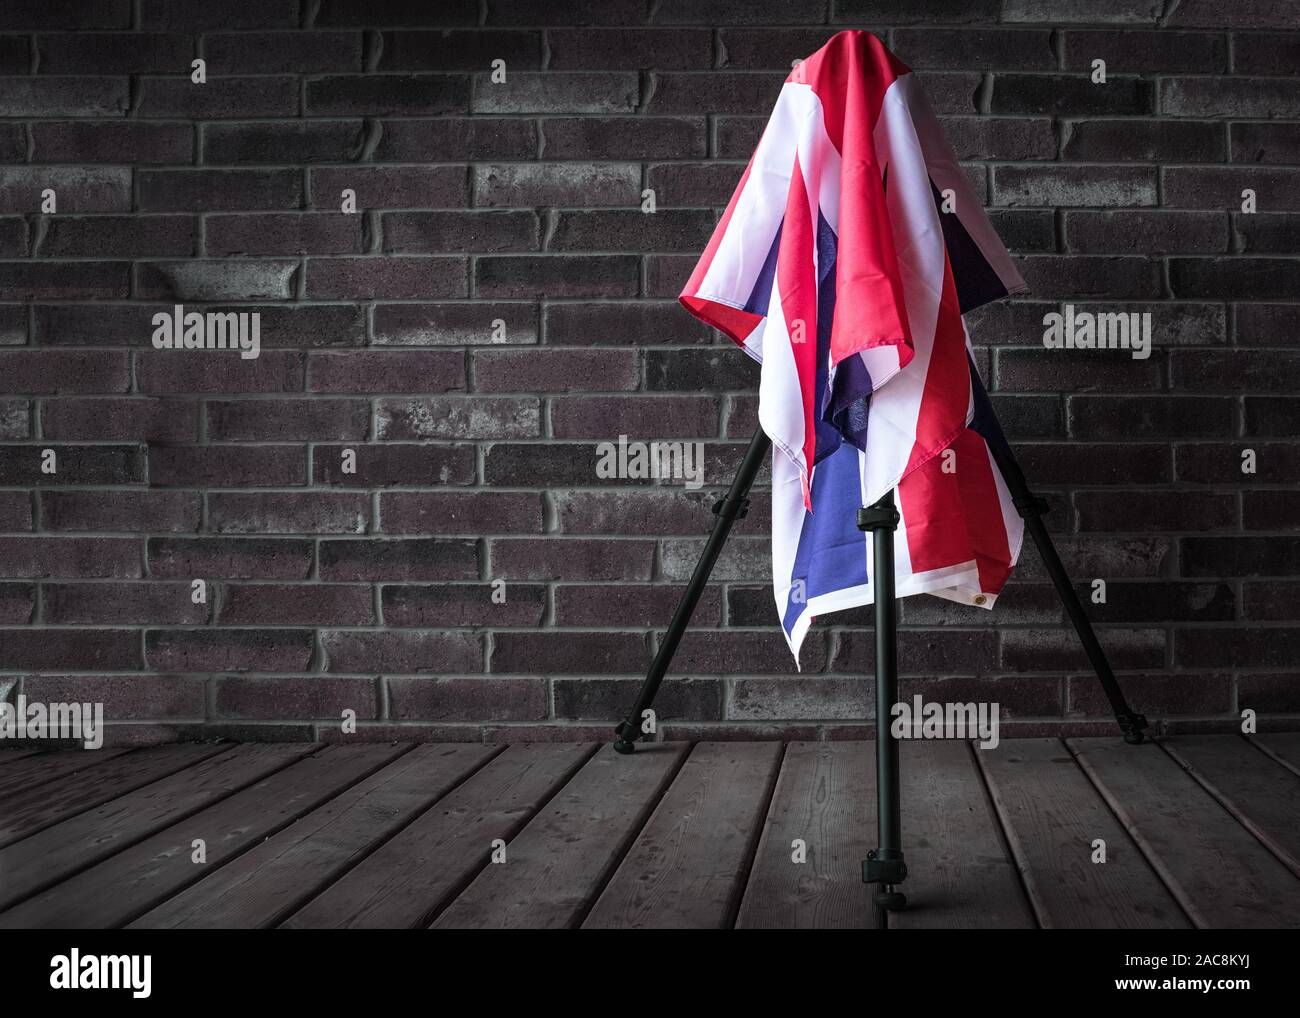 Vor einer Mauer, eine Kamera auf Stativ, bedeckt mit Großbritannien Flagge. Stockfoto